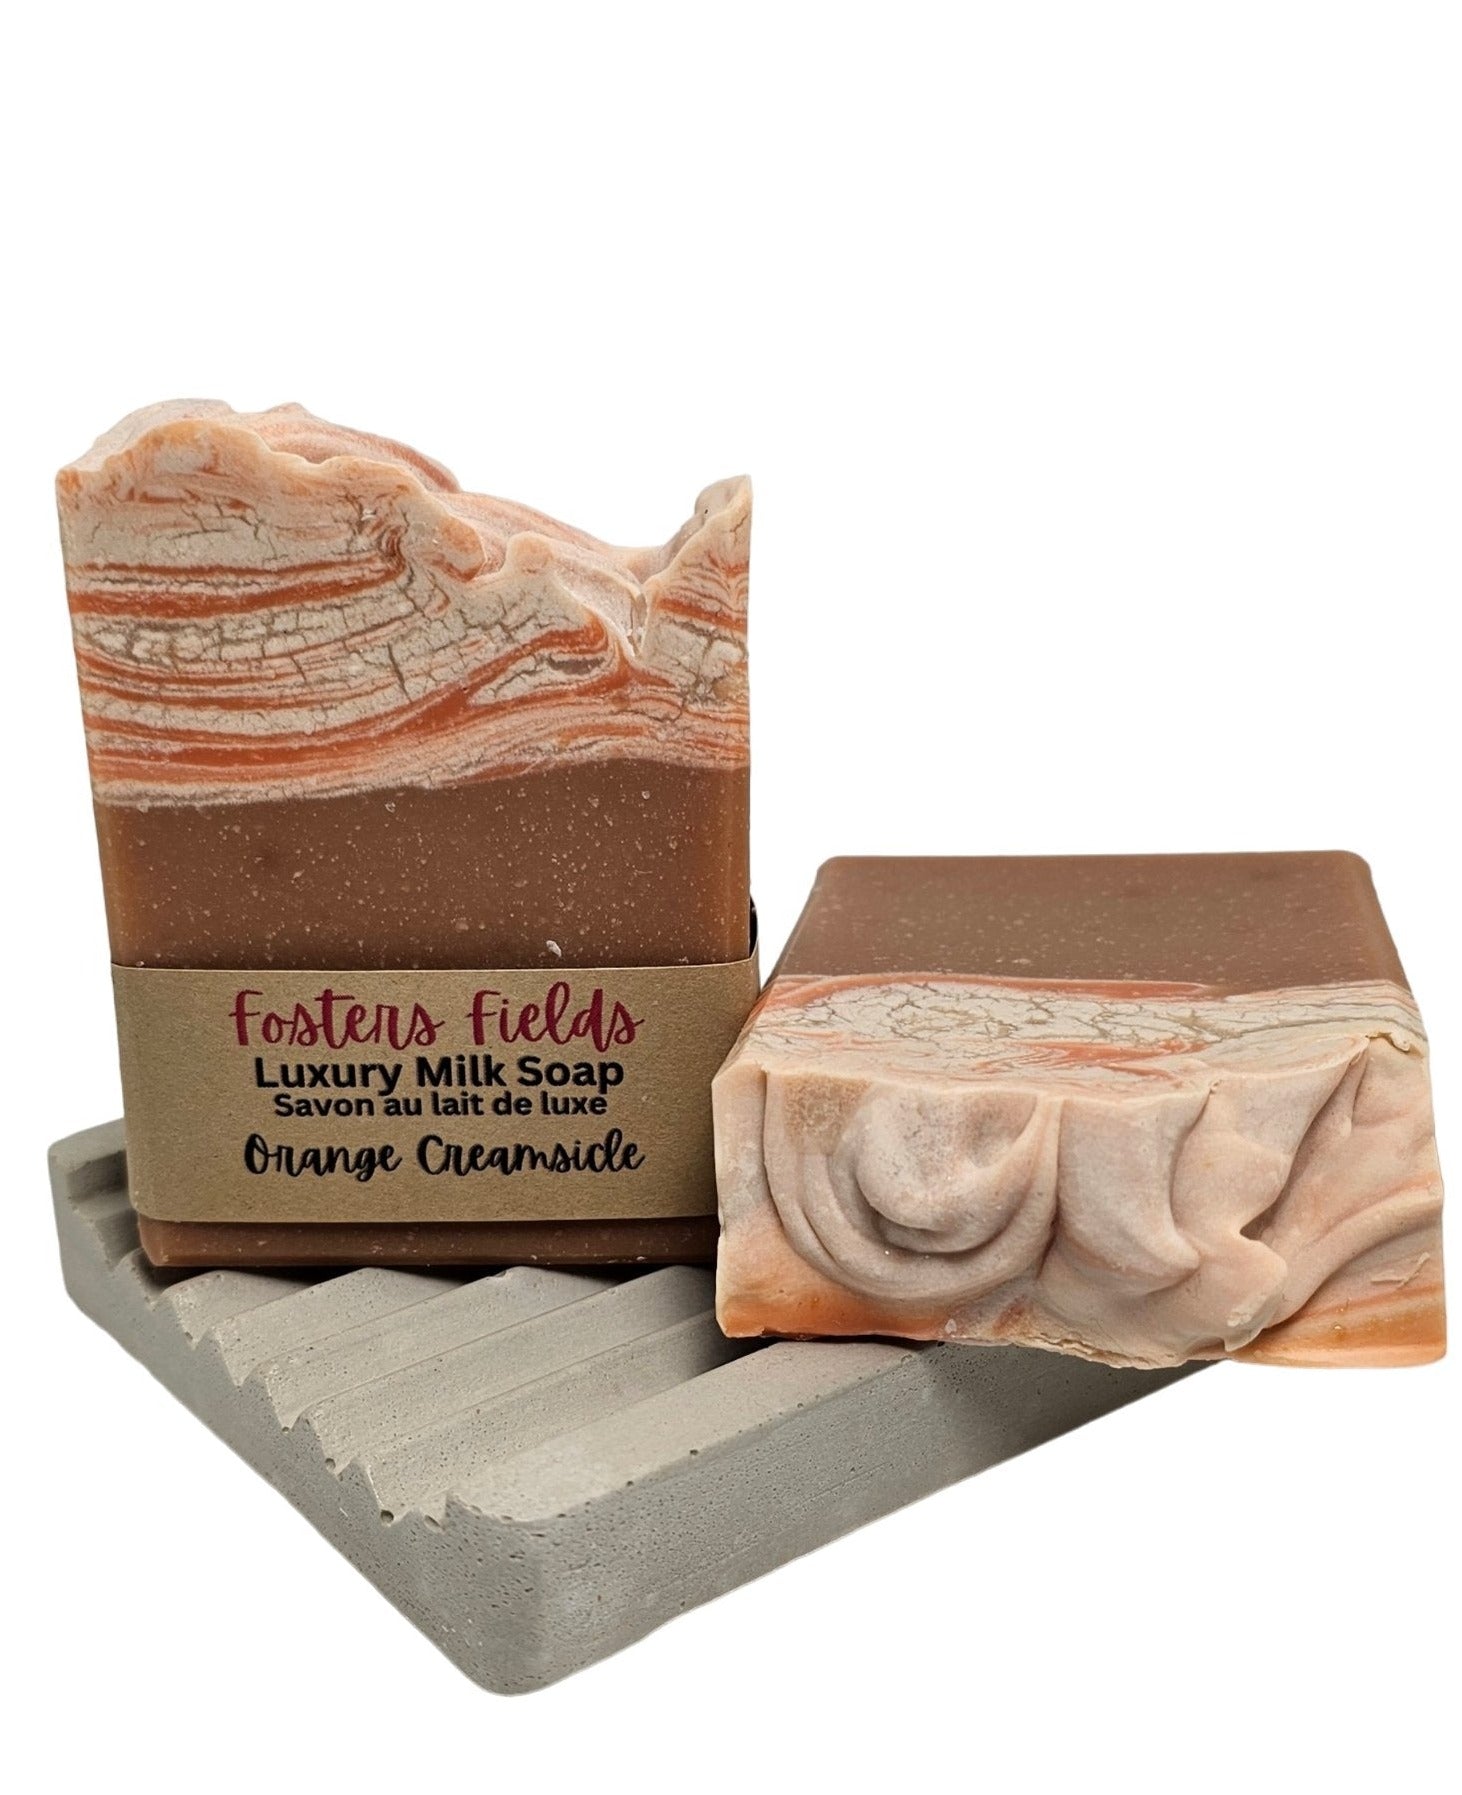 Orange Creamsicle Luxury Milk Soap - FostersFieldssoap#soycandles#fostersfields#handmadesoap#natural soapOrange Creamsicle Luxury Milk Soap